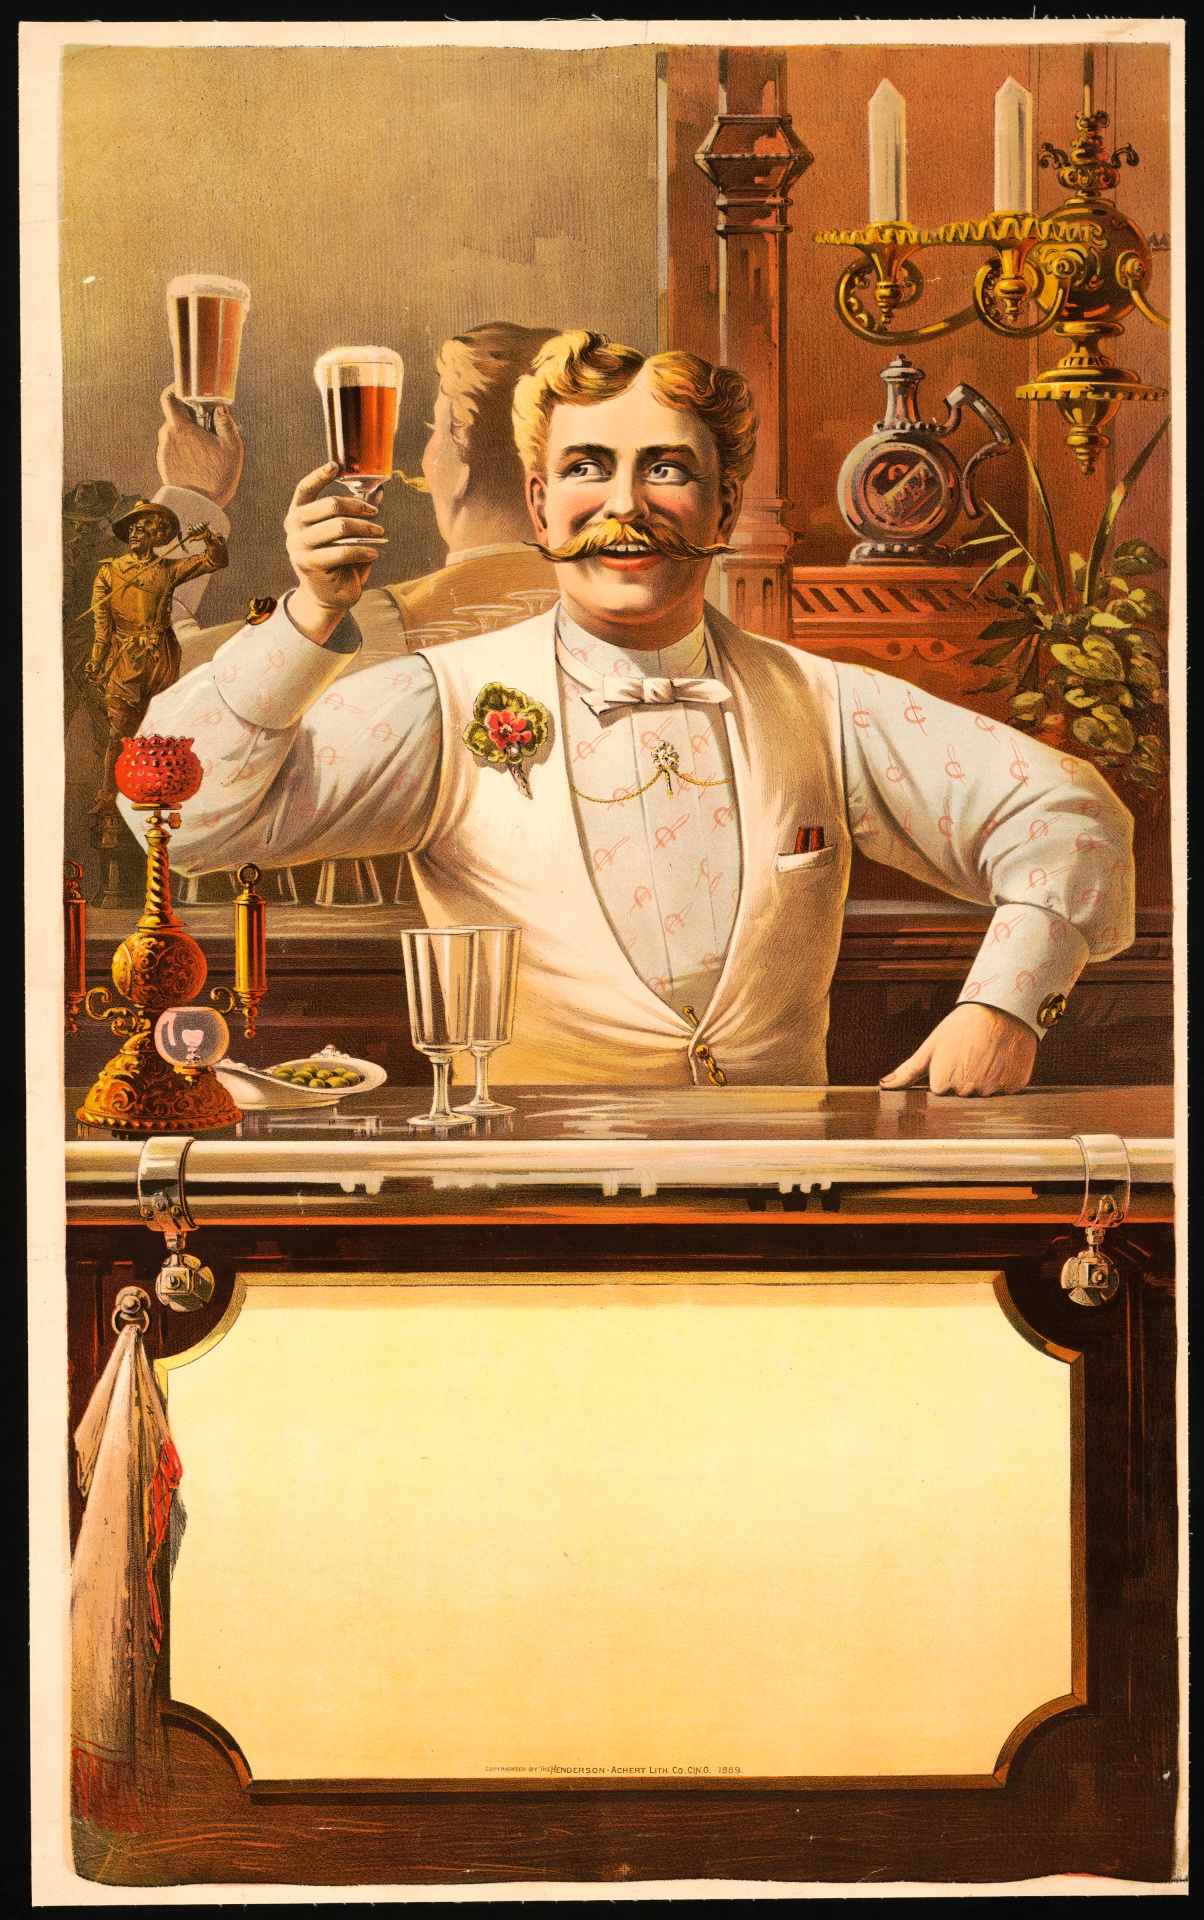 Cartel vintage de barman